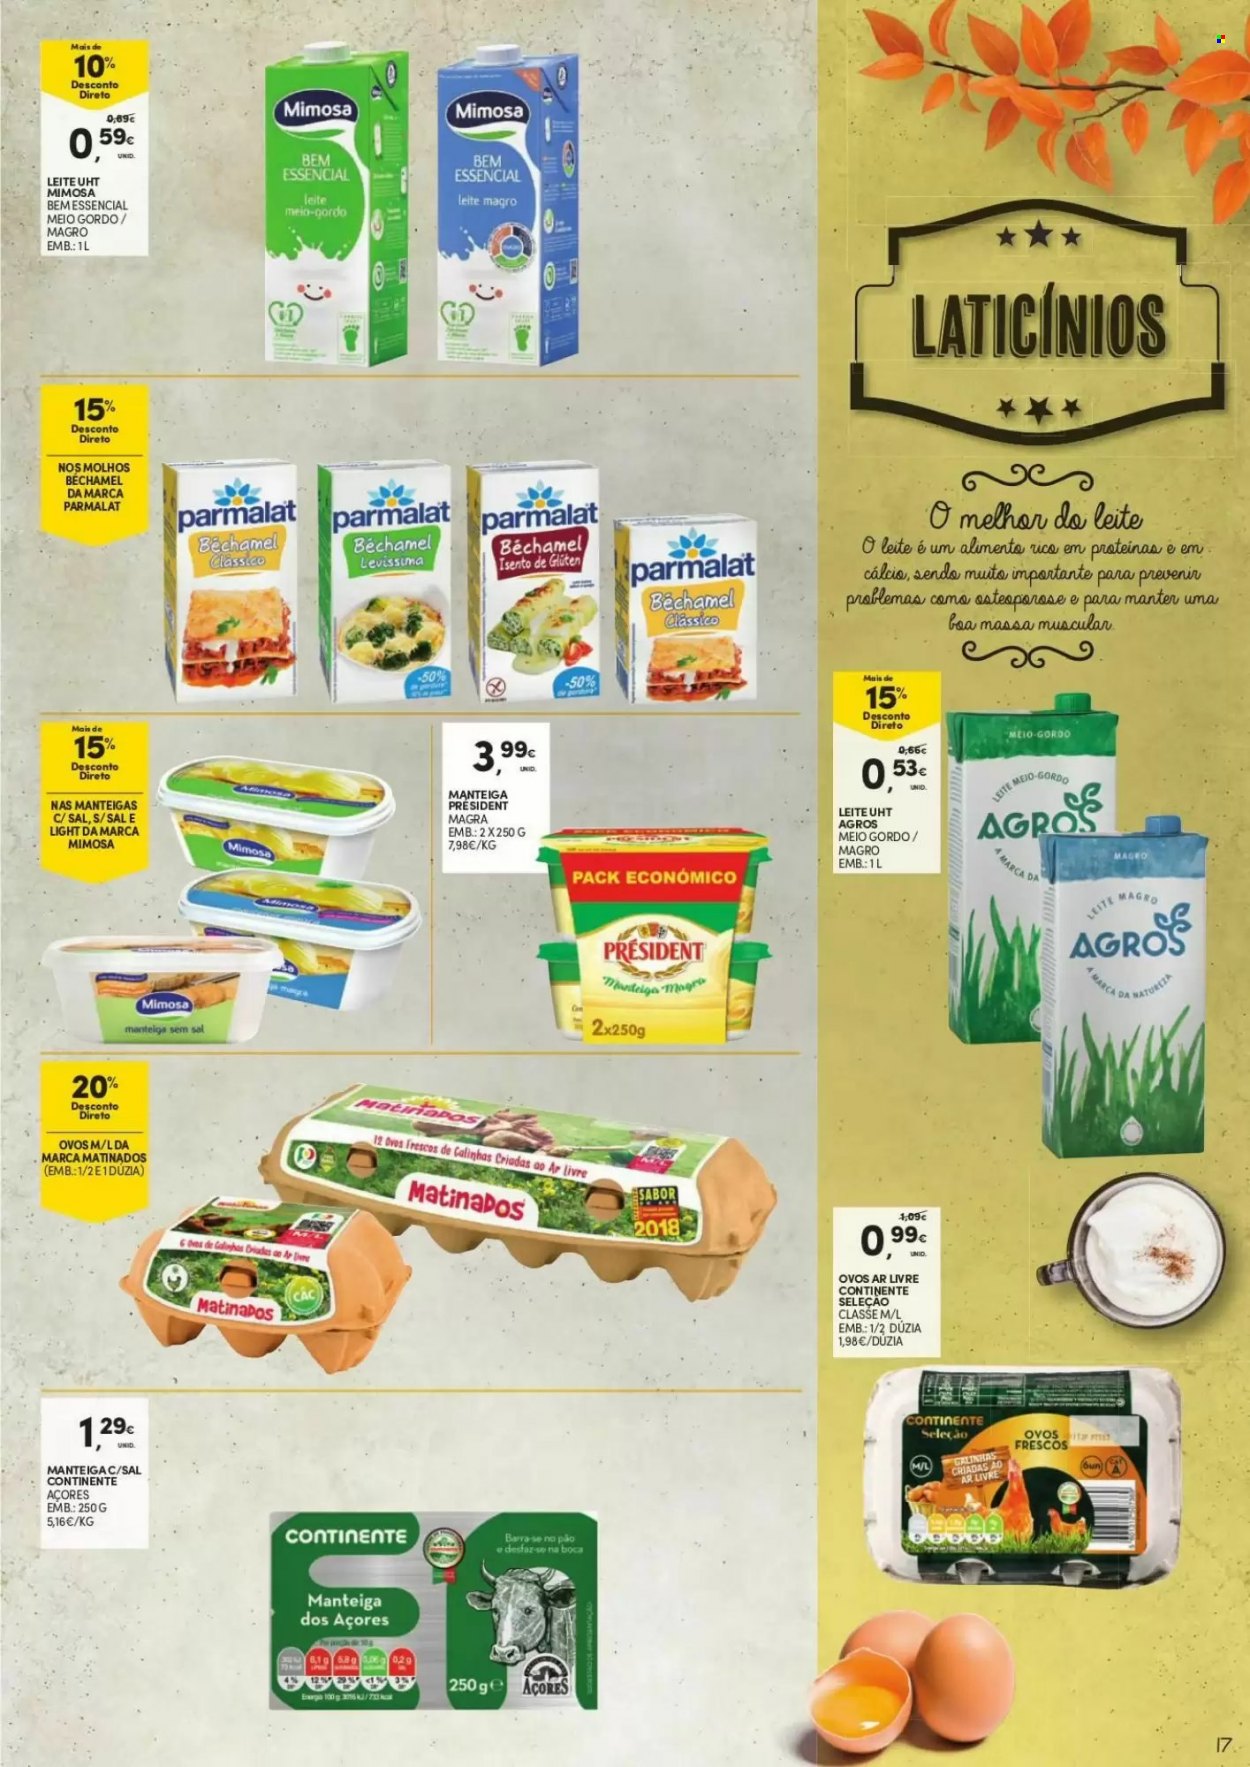 thumbnail - Folheto Continente - 14.9.2021 - 3.10.2021 - Produtos em promoção - pão, Président, Parmalat, Mimosa, manteiga, molho. Página 17.